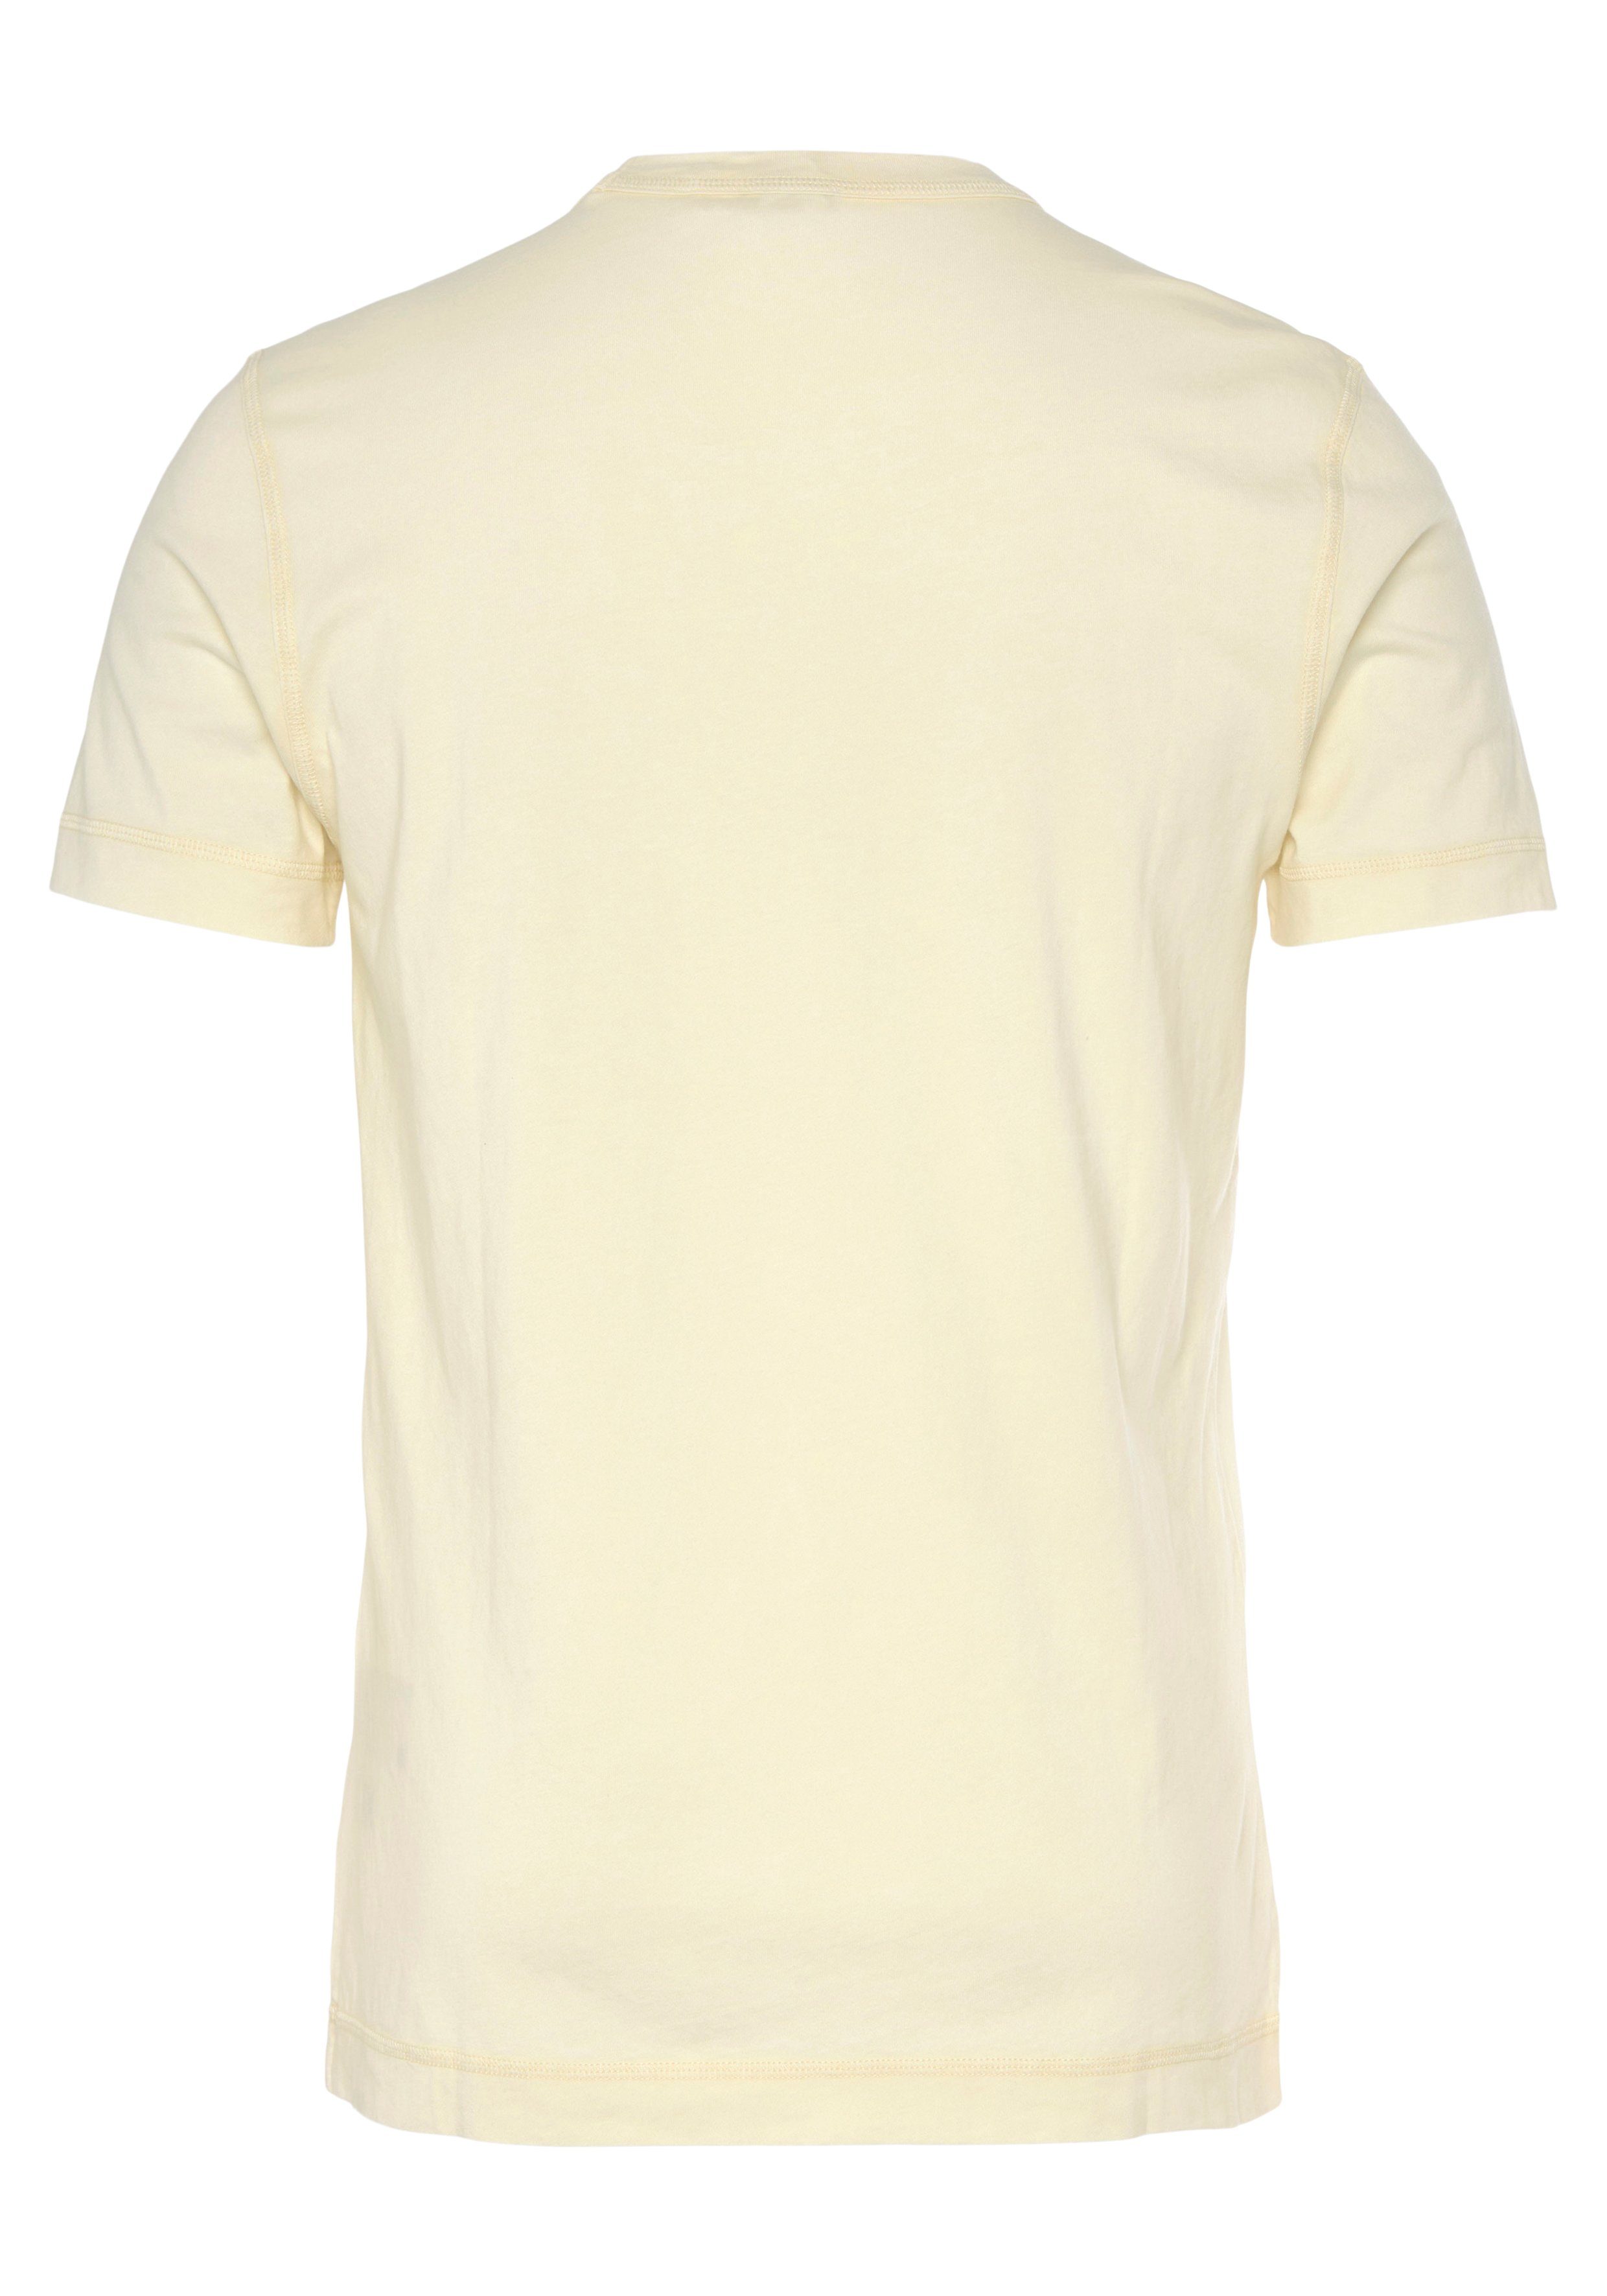 Tokks ORANGE ORANGE Markenlabel T-Shirt BOSS beige277 mit BOSS